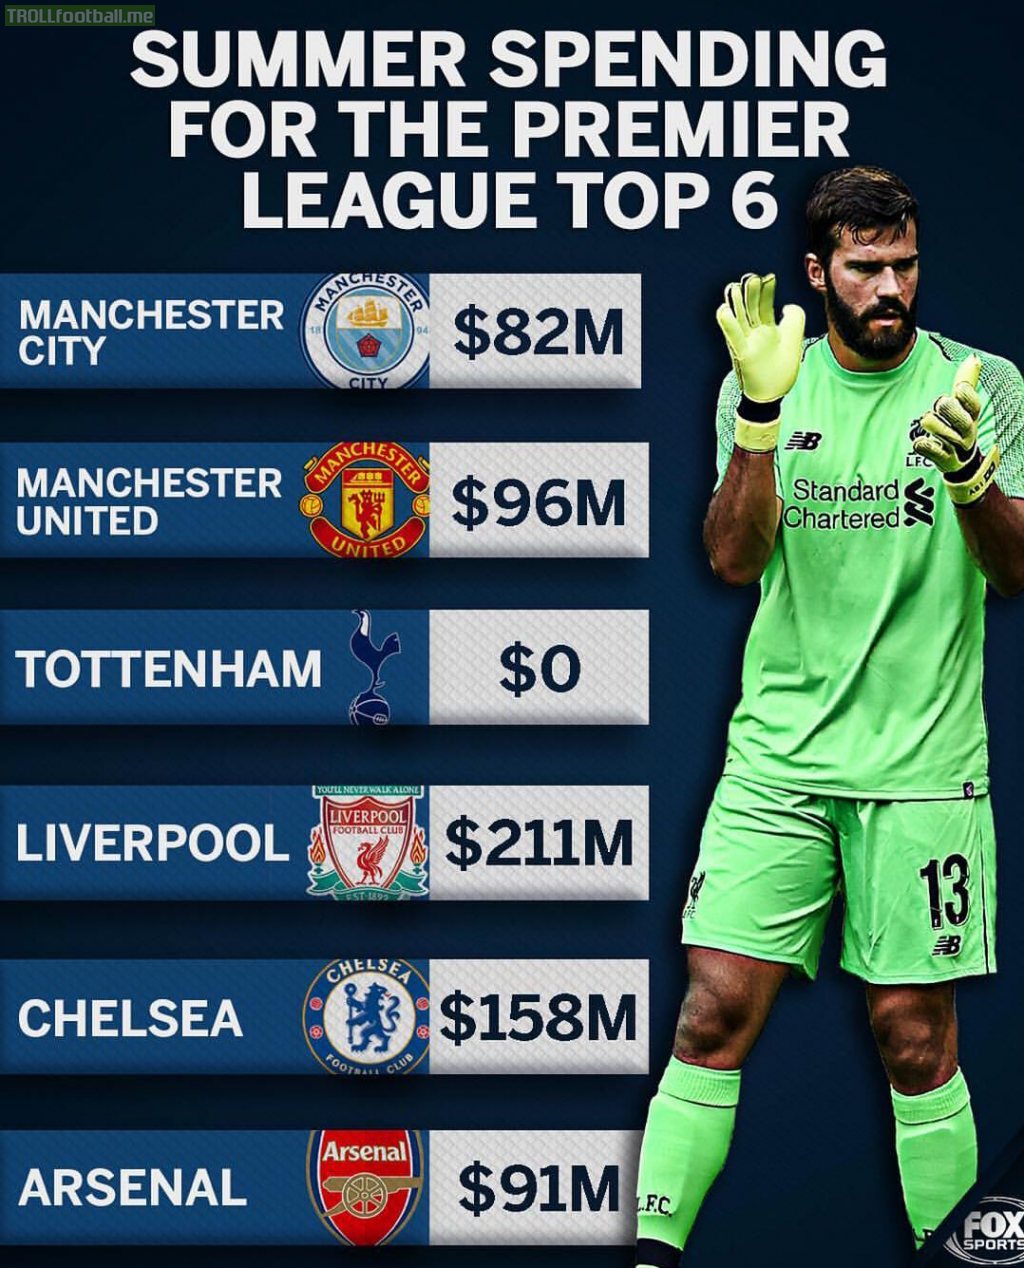 Premier League top 6 summer spending